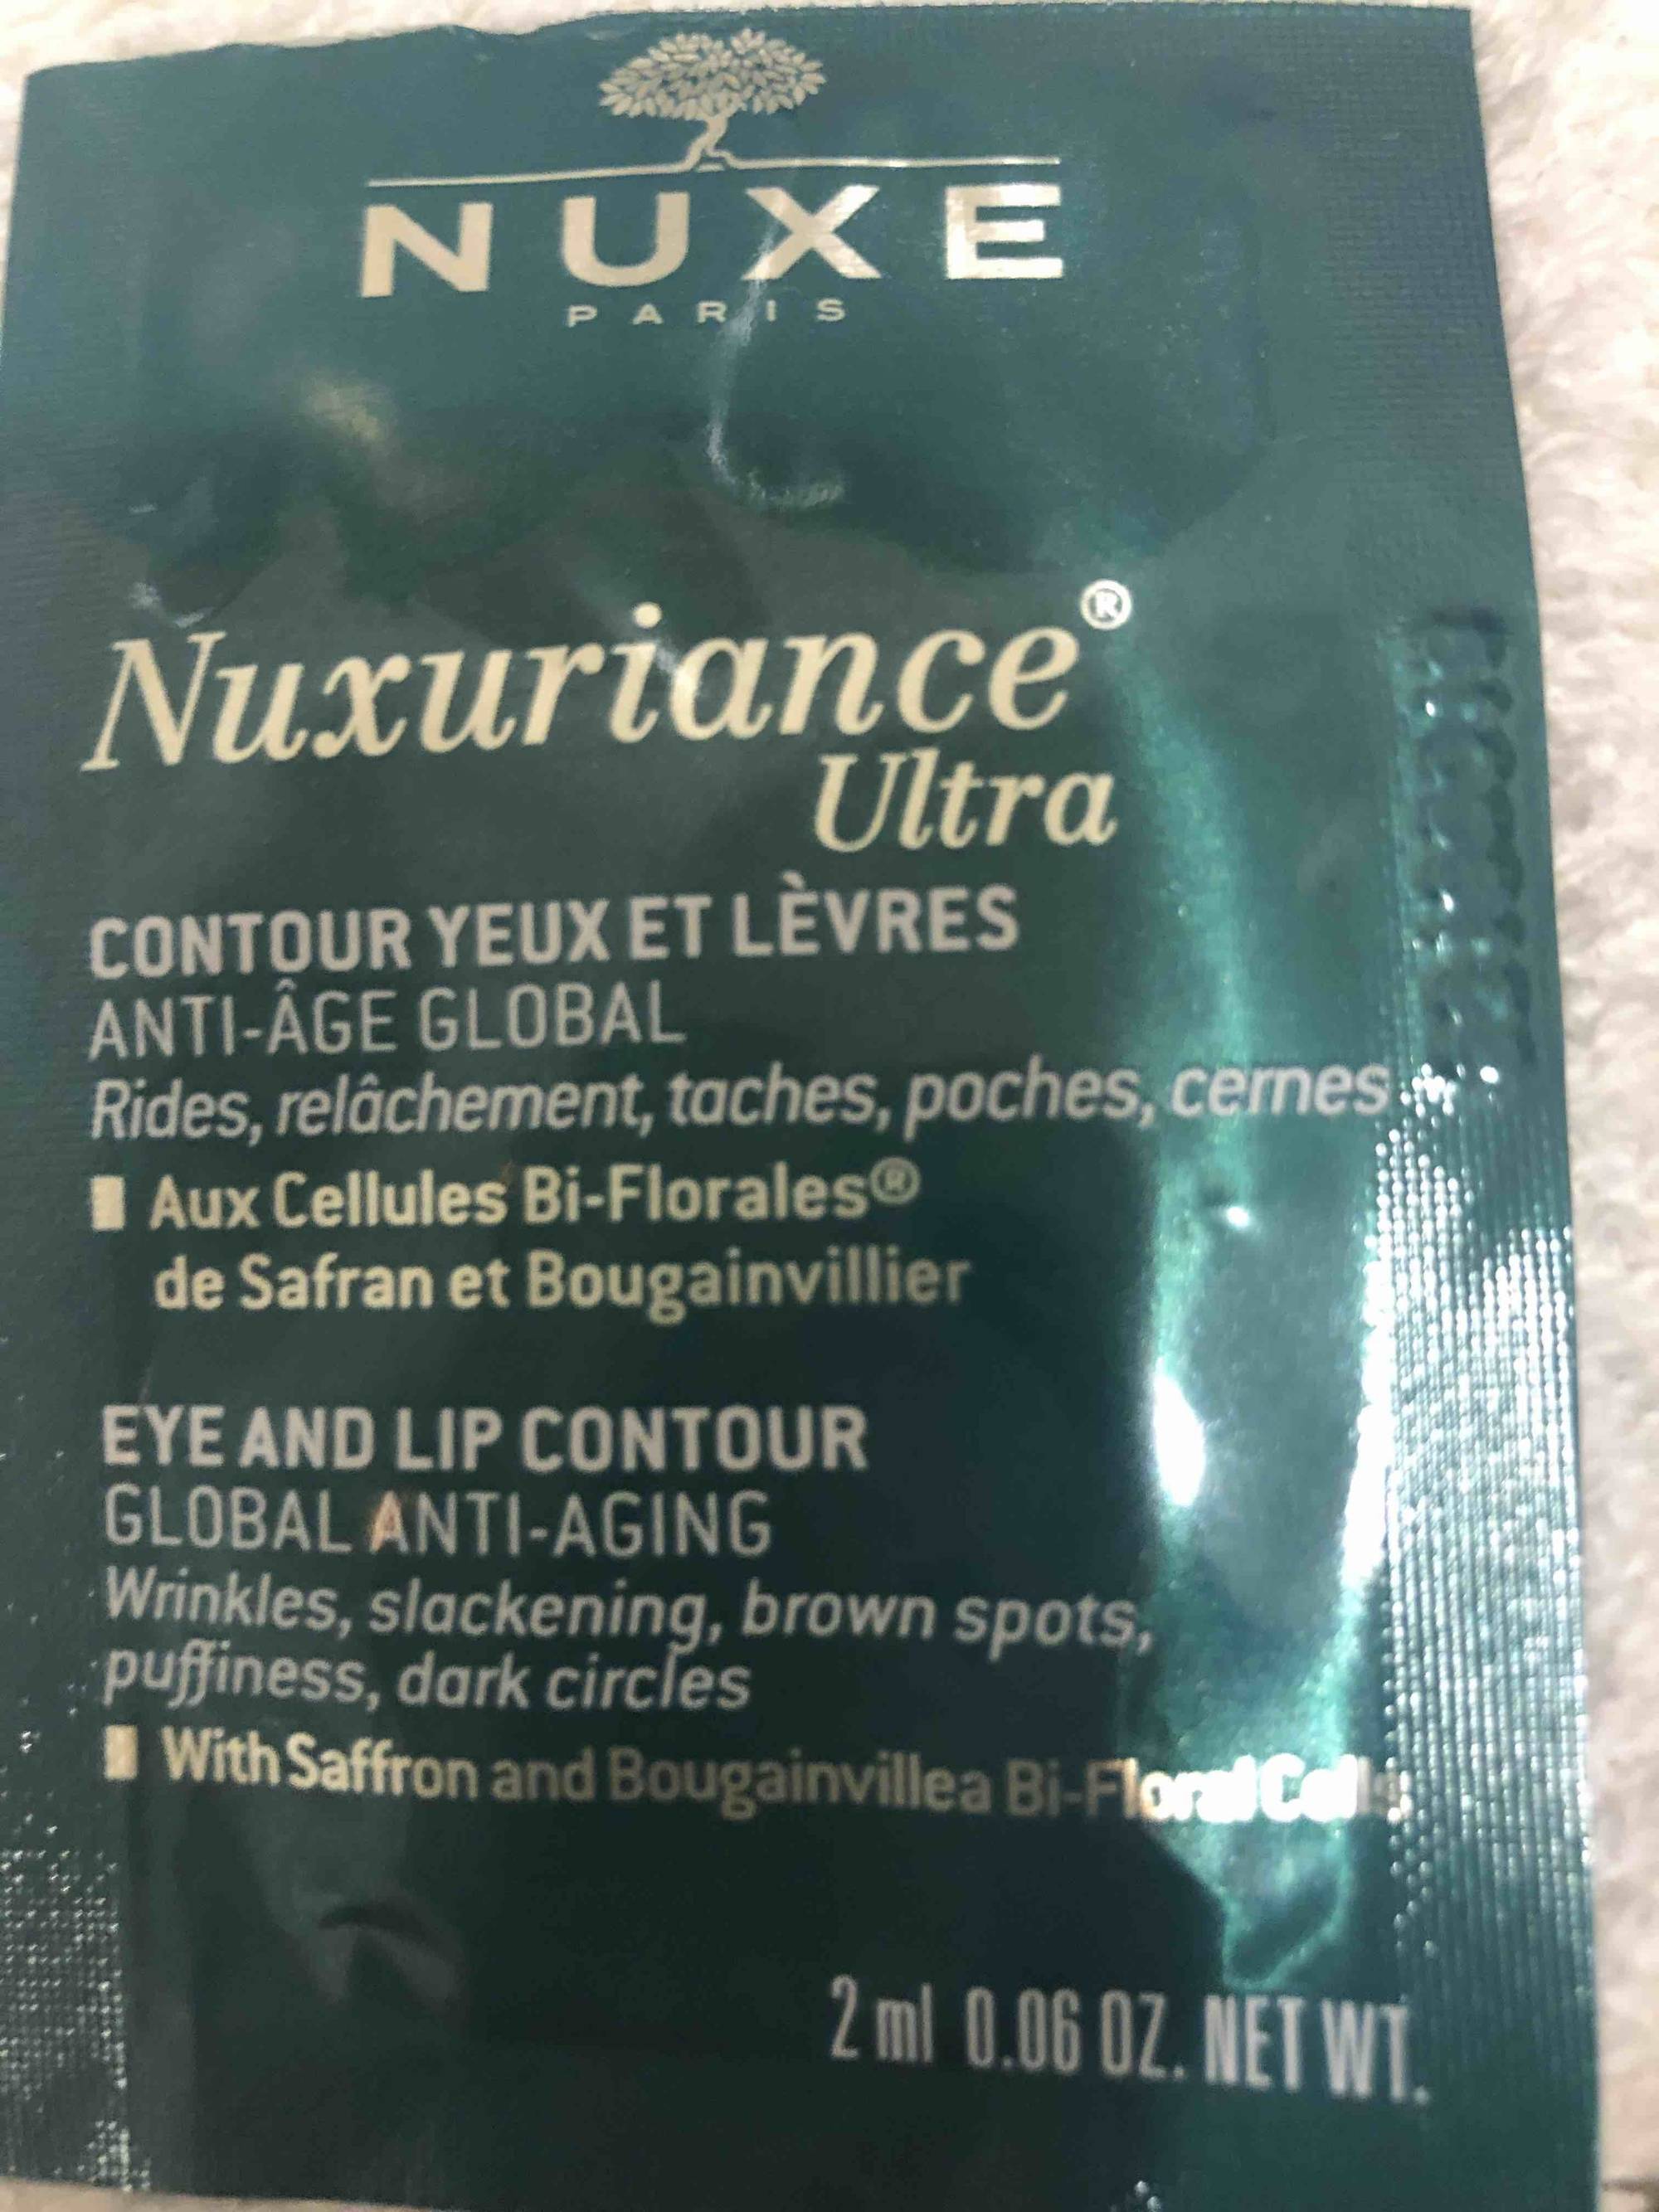 NUXE PARIS - Nuxuriance ultra - Contour yeux et lèvres